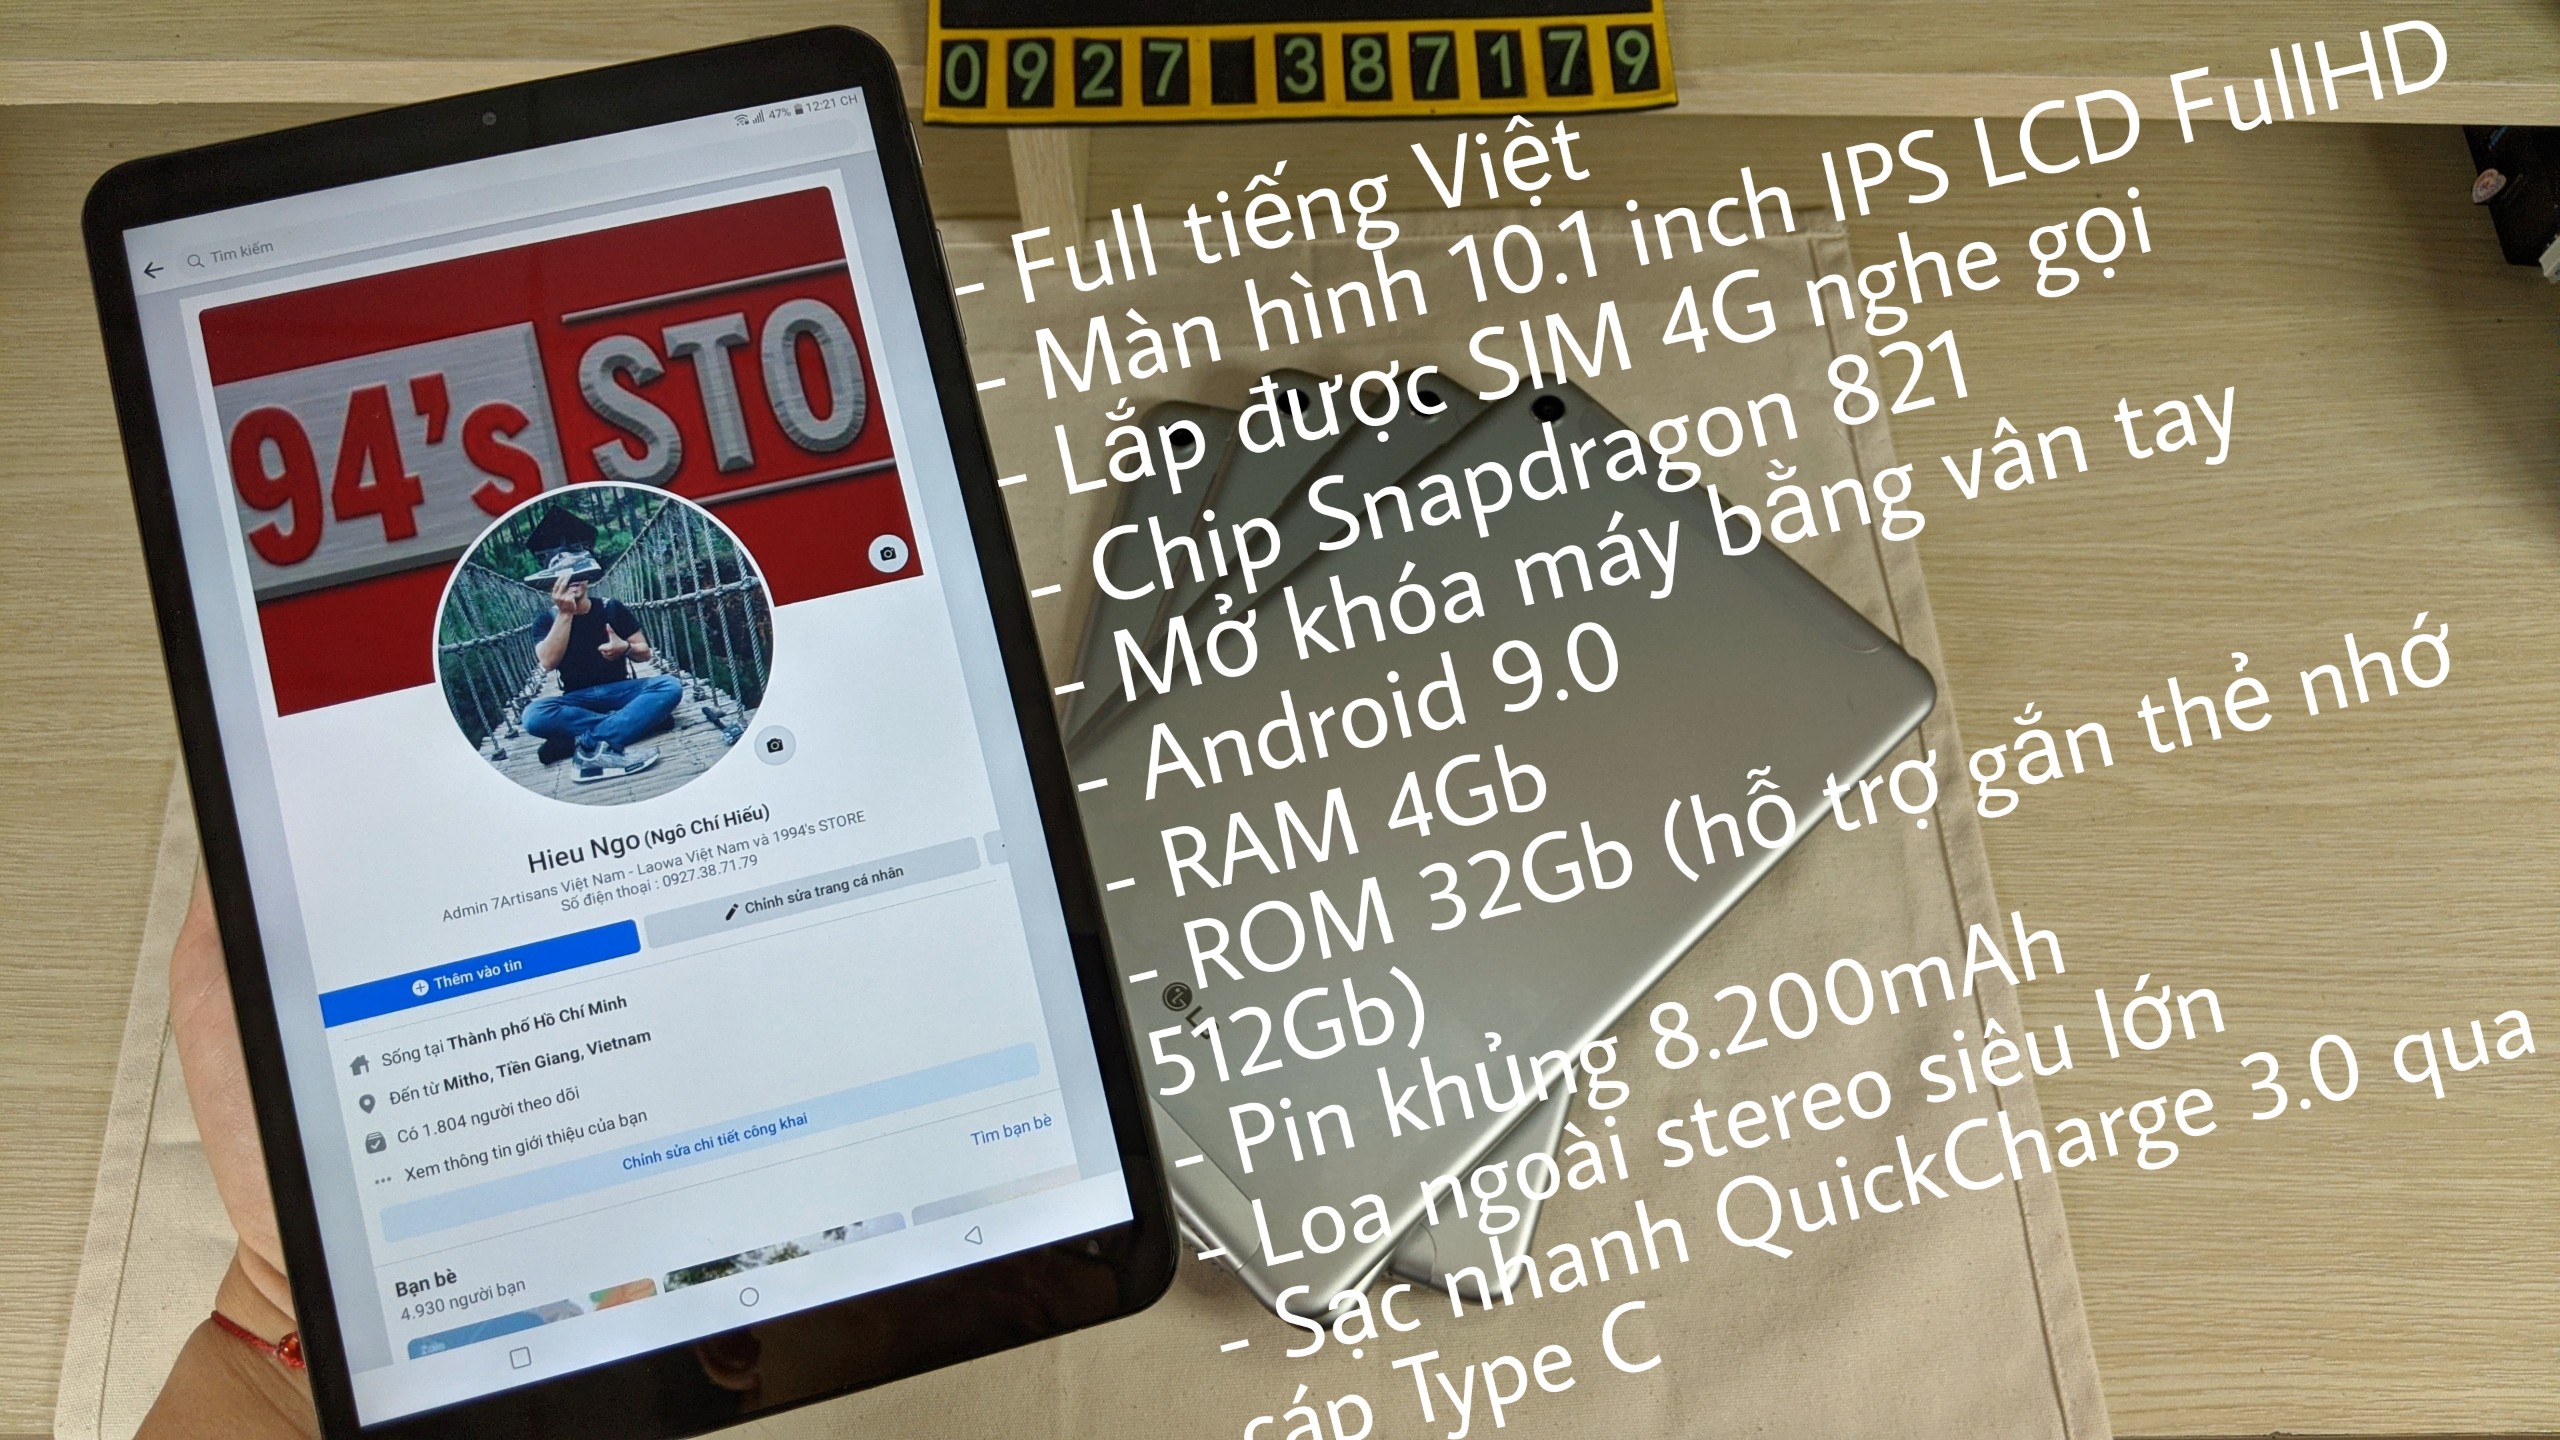 [CHƠI GAME + HỌC TẬP] Máy tính bảng LG G PAD 5 T600 - 4G LTE Nghe Gọi - Có sạc nhanh Quick Charge 3.0 - Lên mạng, xem video